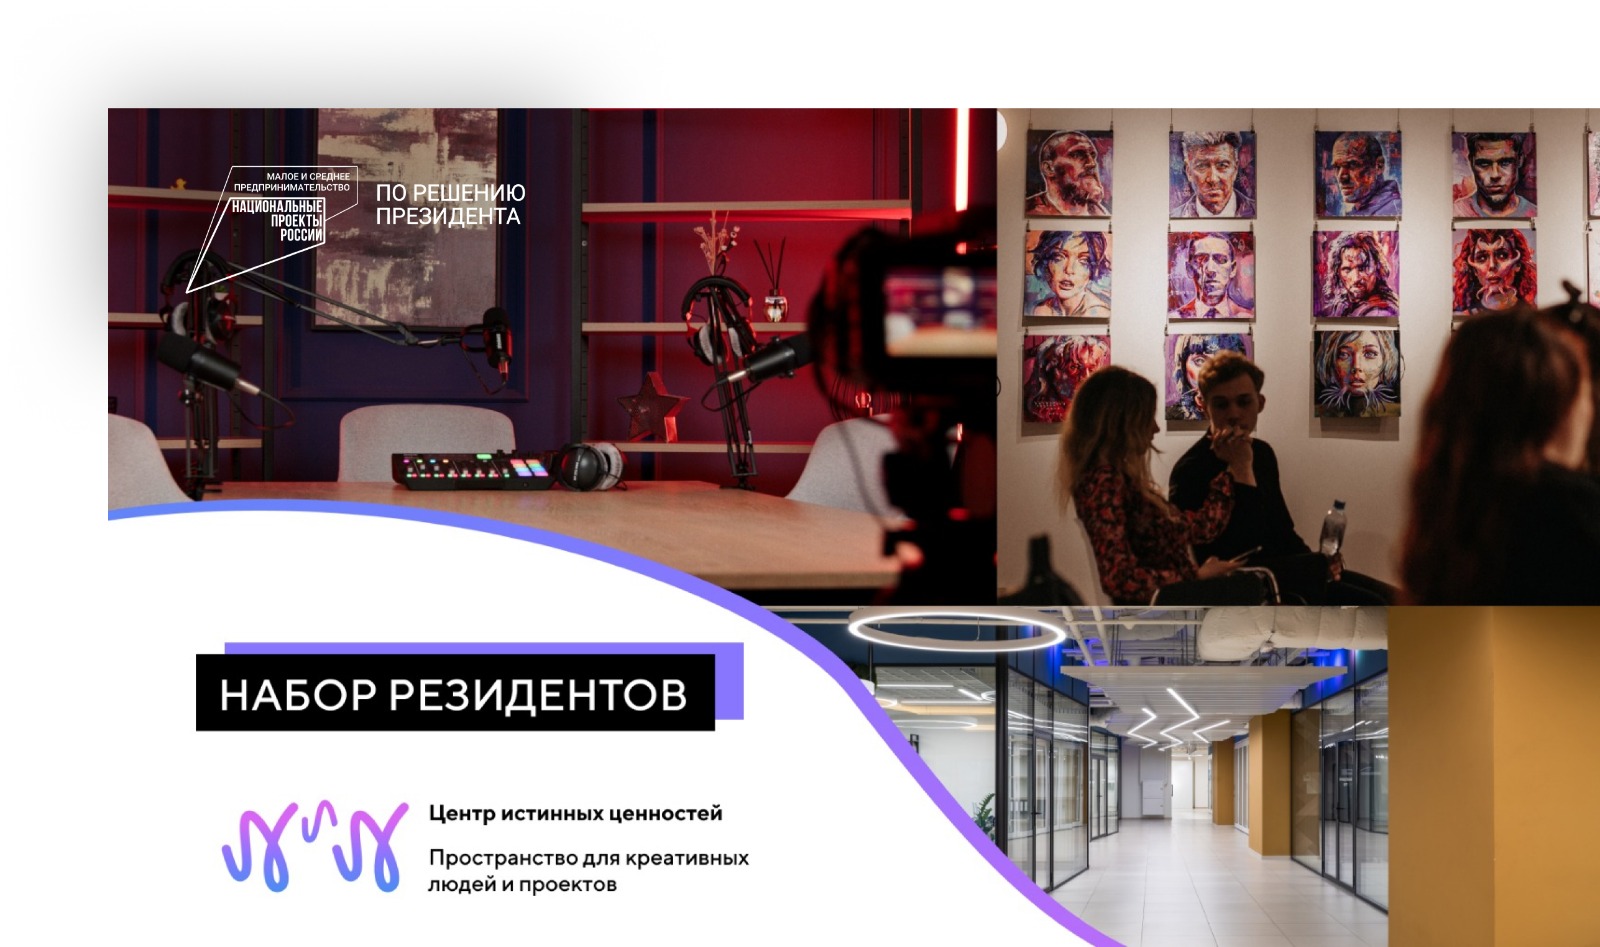 Центр истинных ценностей в Ростове объявляет новый набор резидентов